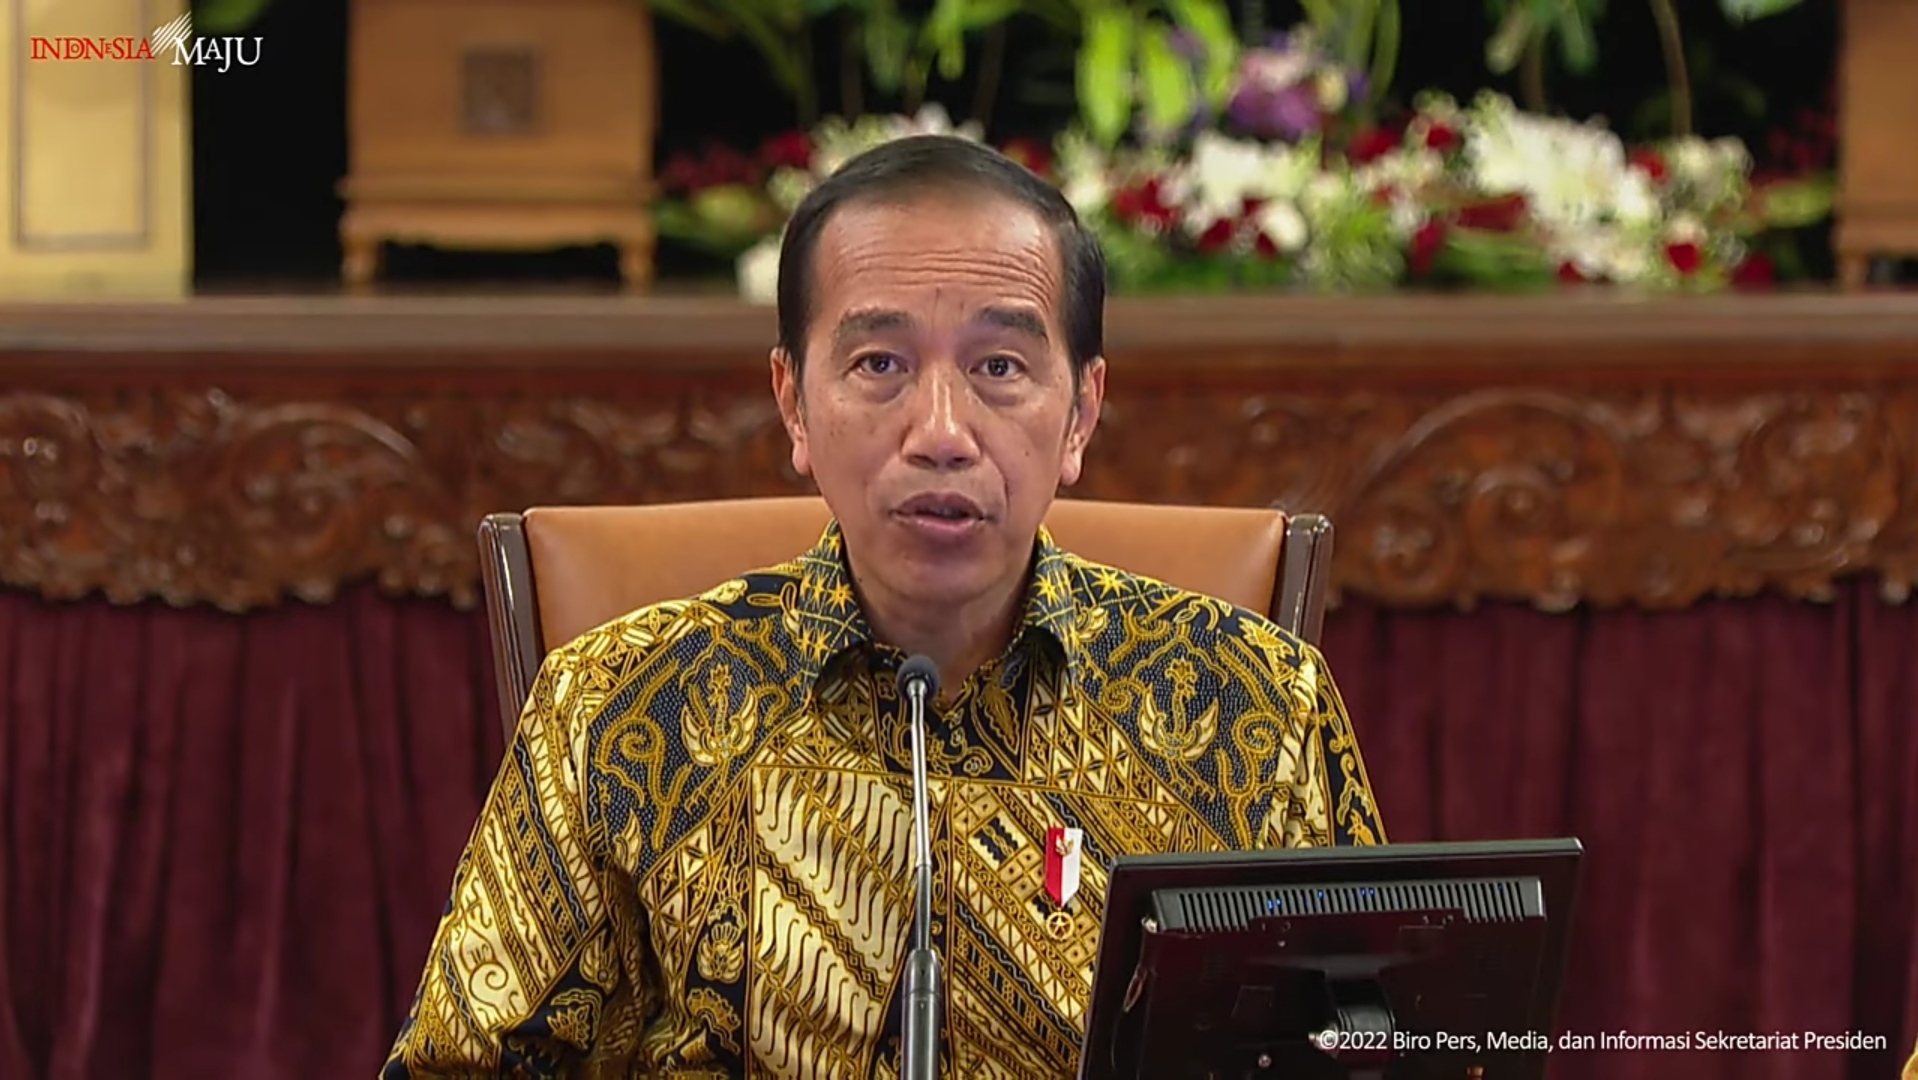 Jokowi Cabut PPKM di Seluruh Indonesia, Namun Bansos Tetap Disalurkan, Segera Daftarkan Diri